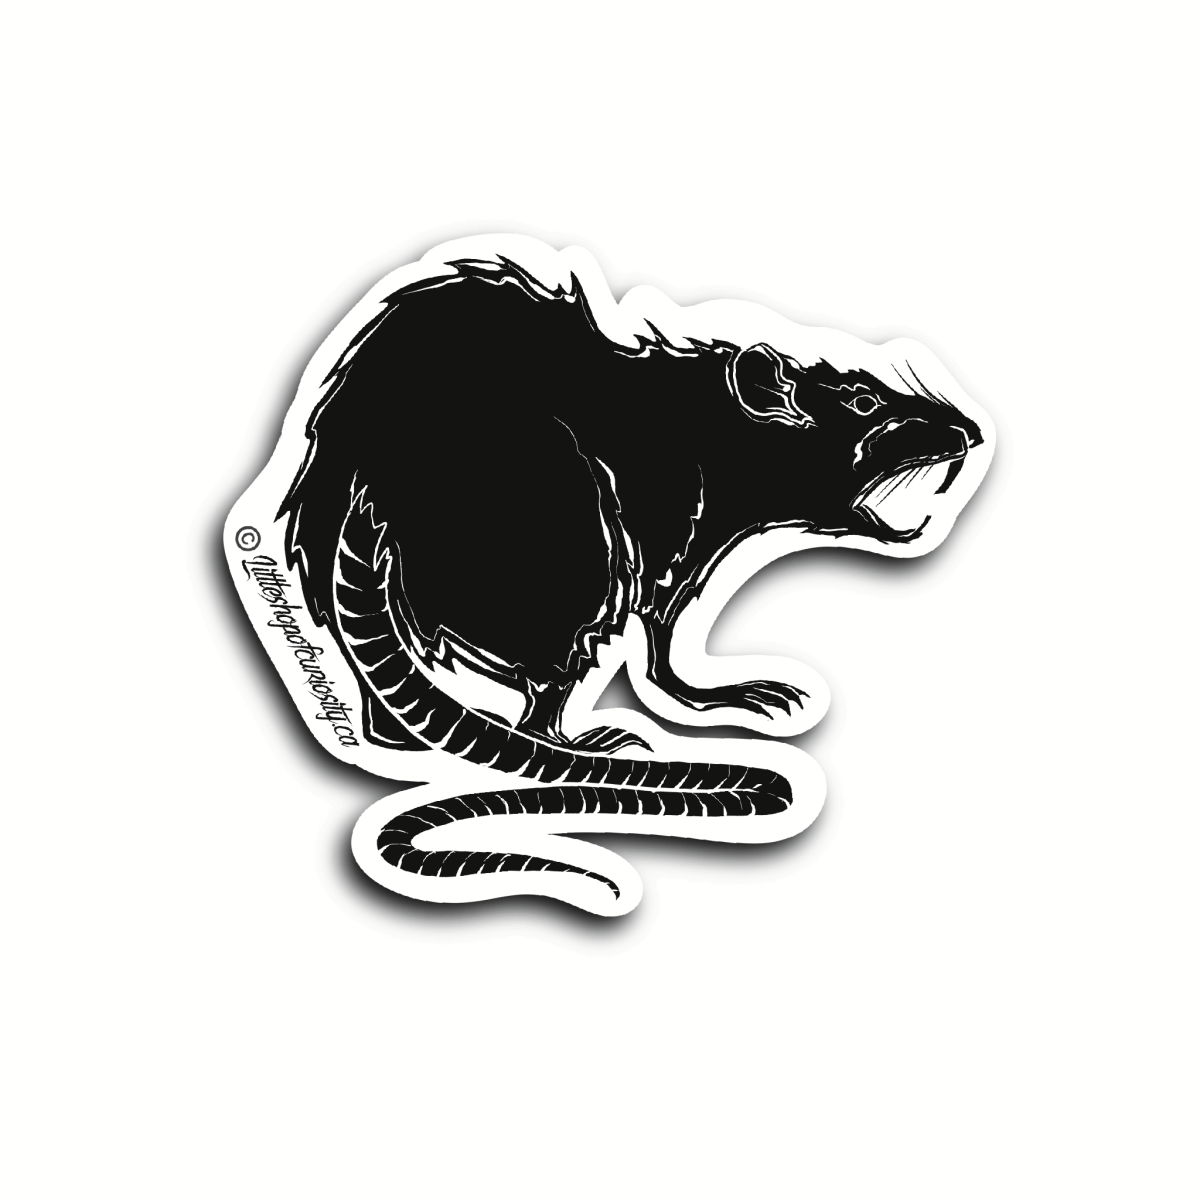 Nightmare Rat Sticker - Black & White Sticker - Little Shop of Curiosity